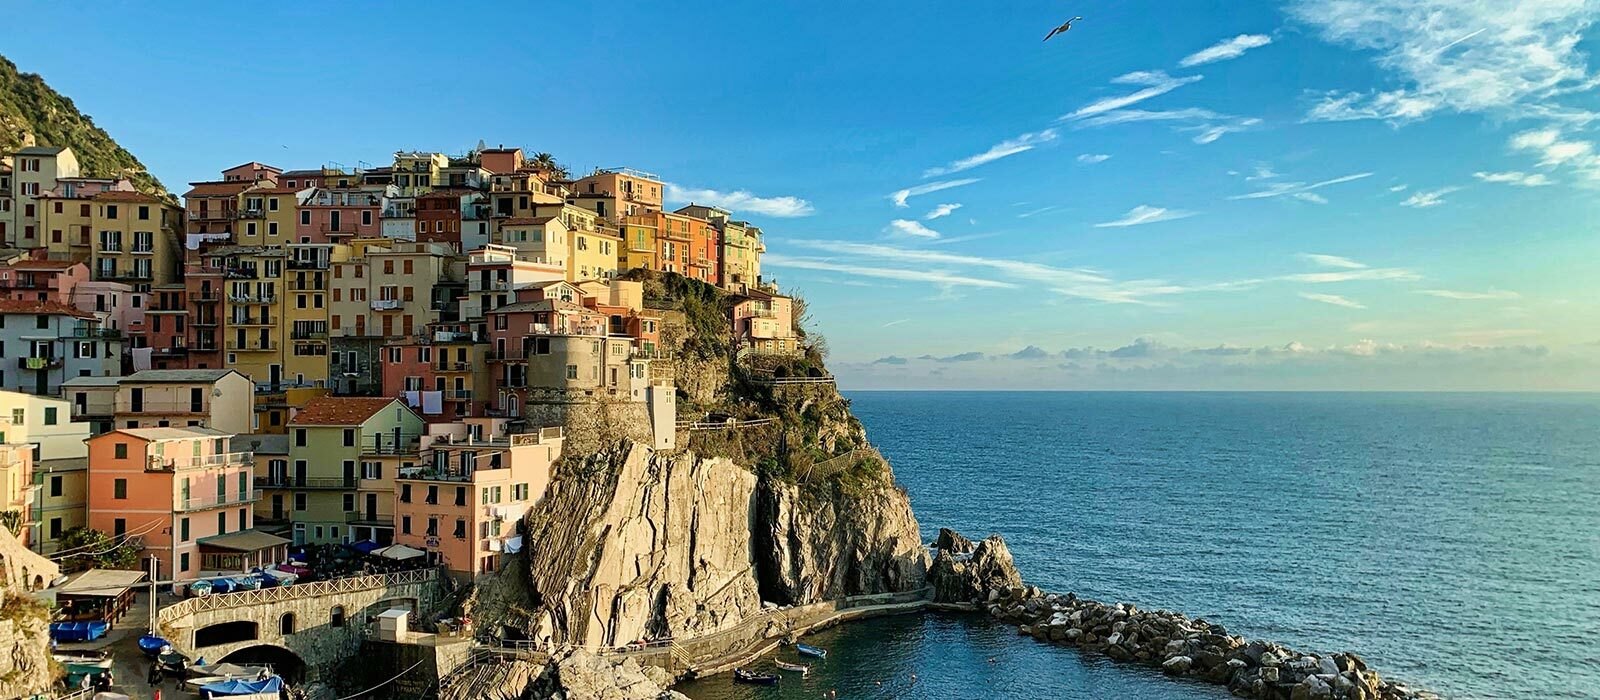 Le Meilleur de l'Italie : littoral et culture